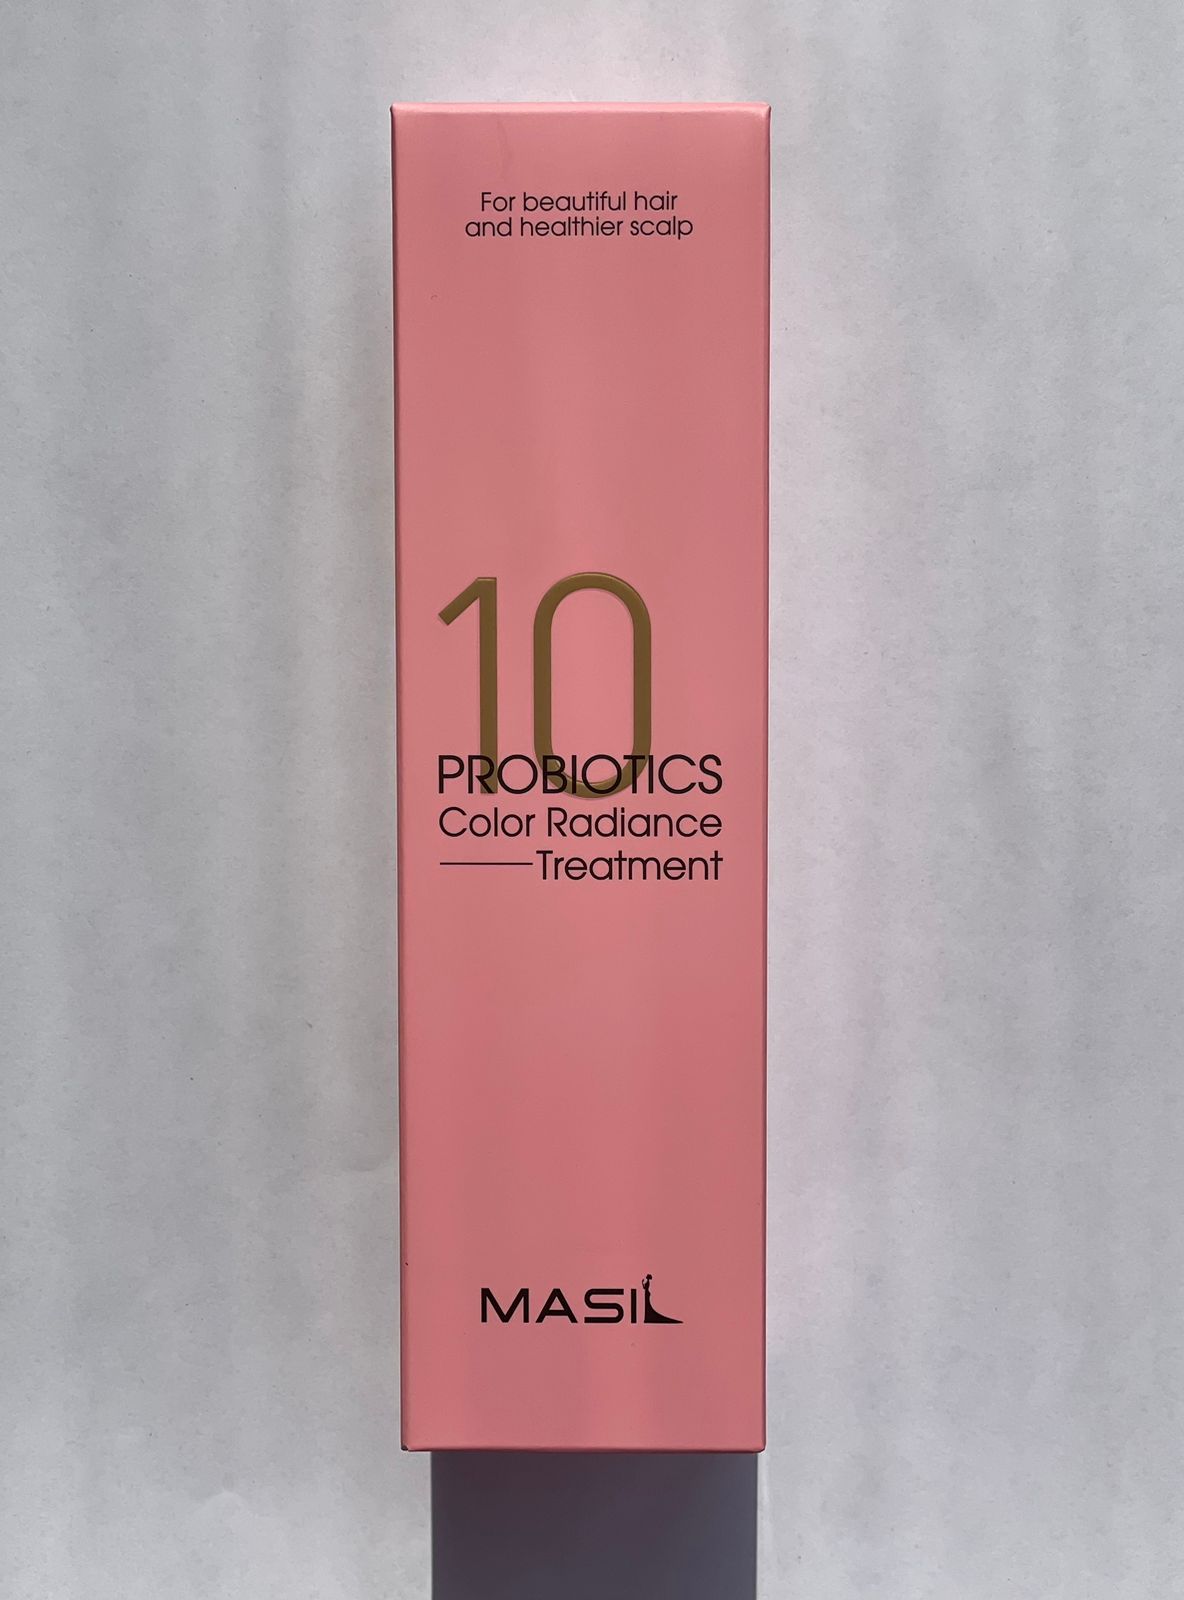 Маска Masil с пробиотиками для защиты цвета Probiotics Color Radiance Treatmant 300 мл бессульфатный шампунь с пробиотиками и яблочным уксусом 5 probiotics apple vinegar shampoo шампунь 20 8мл